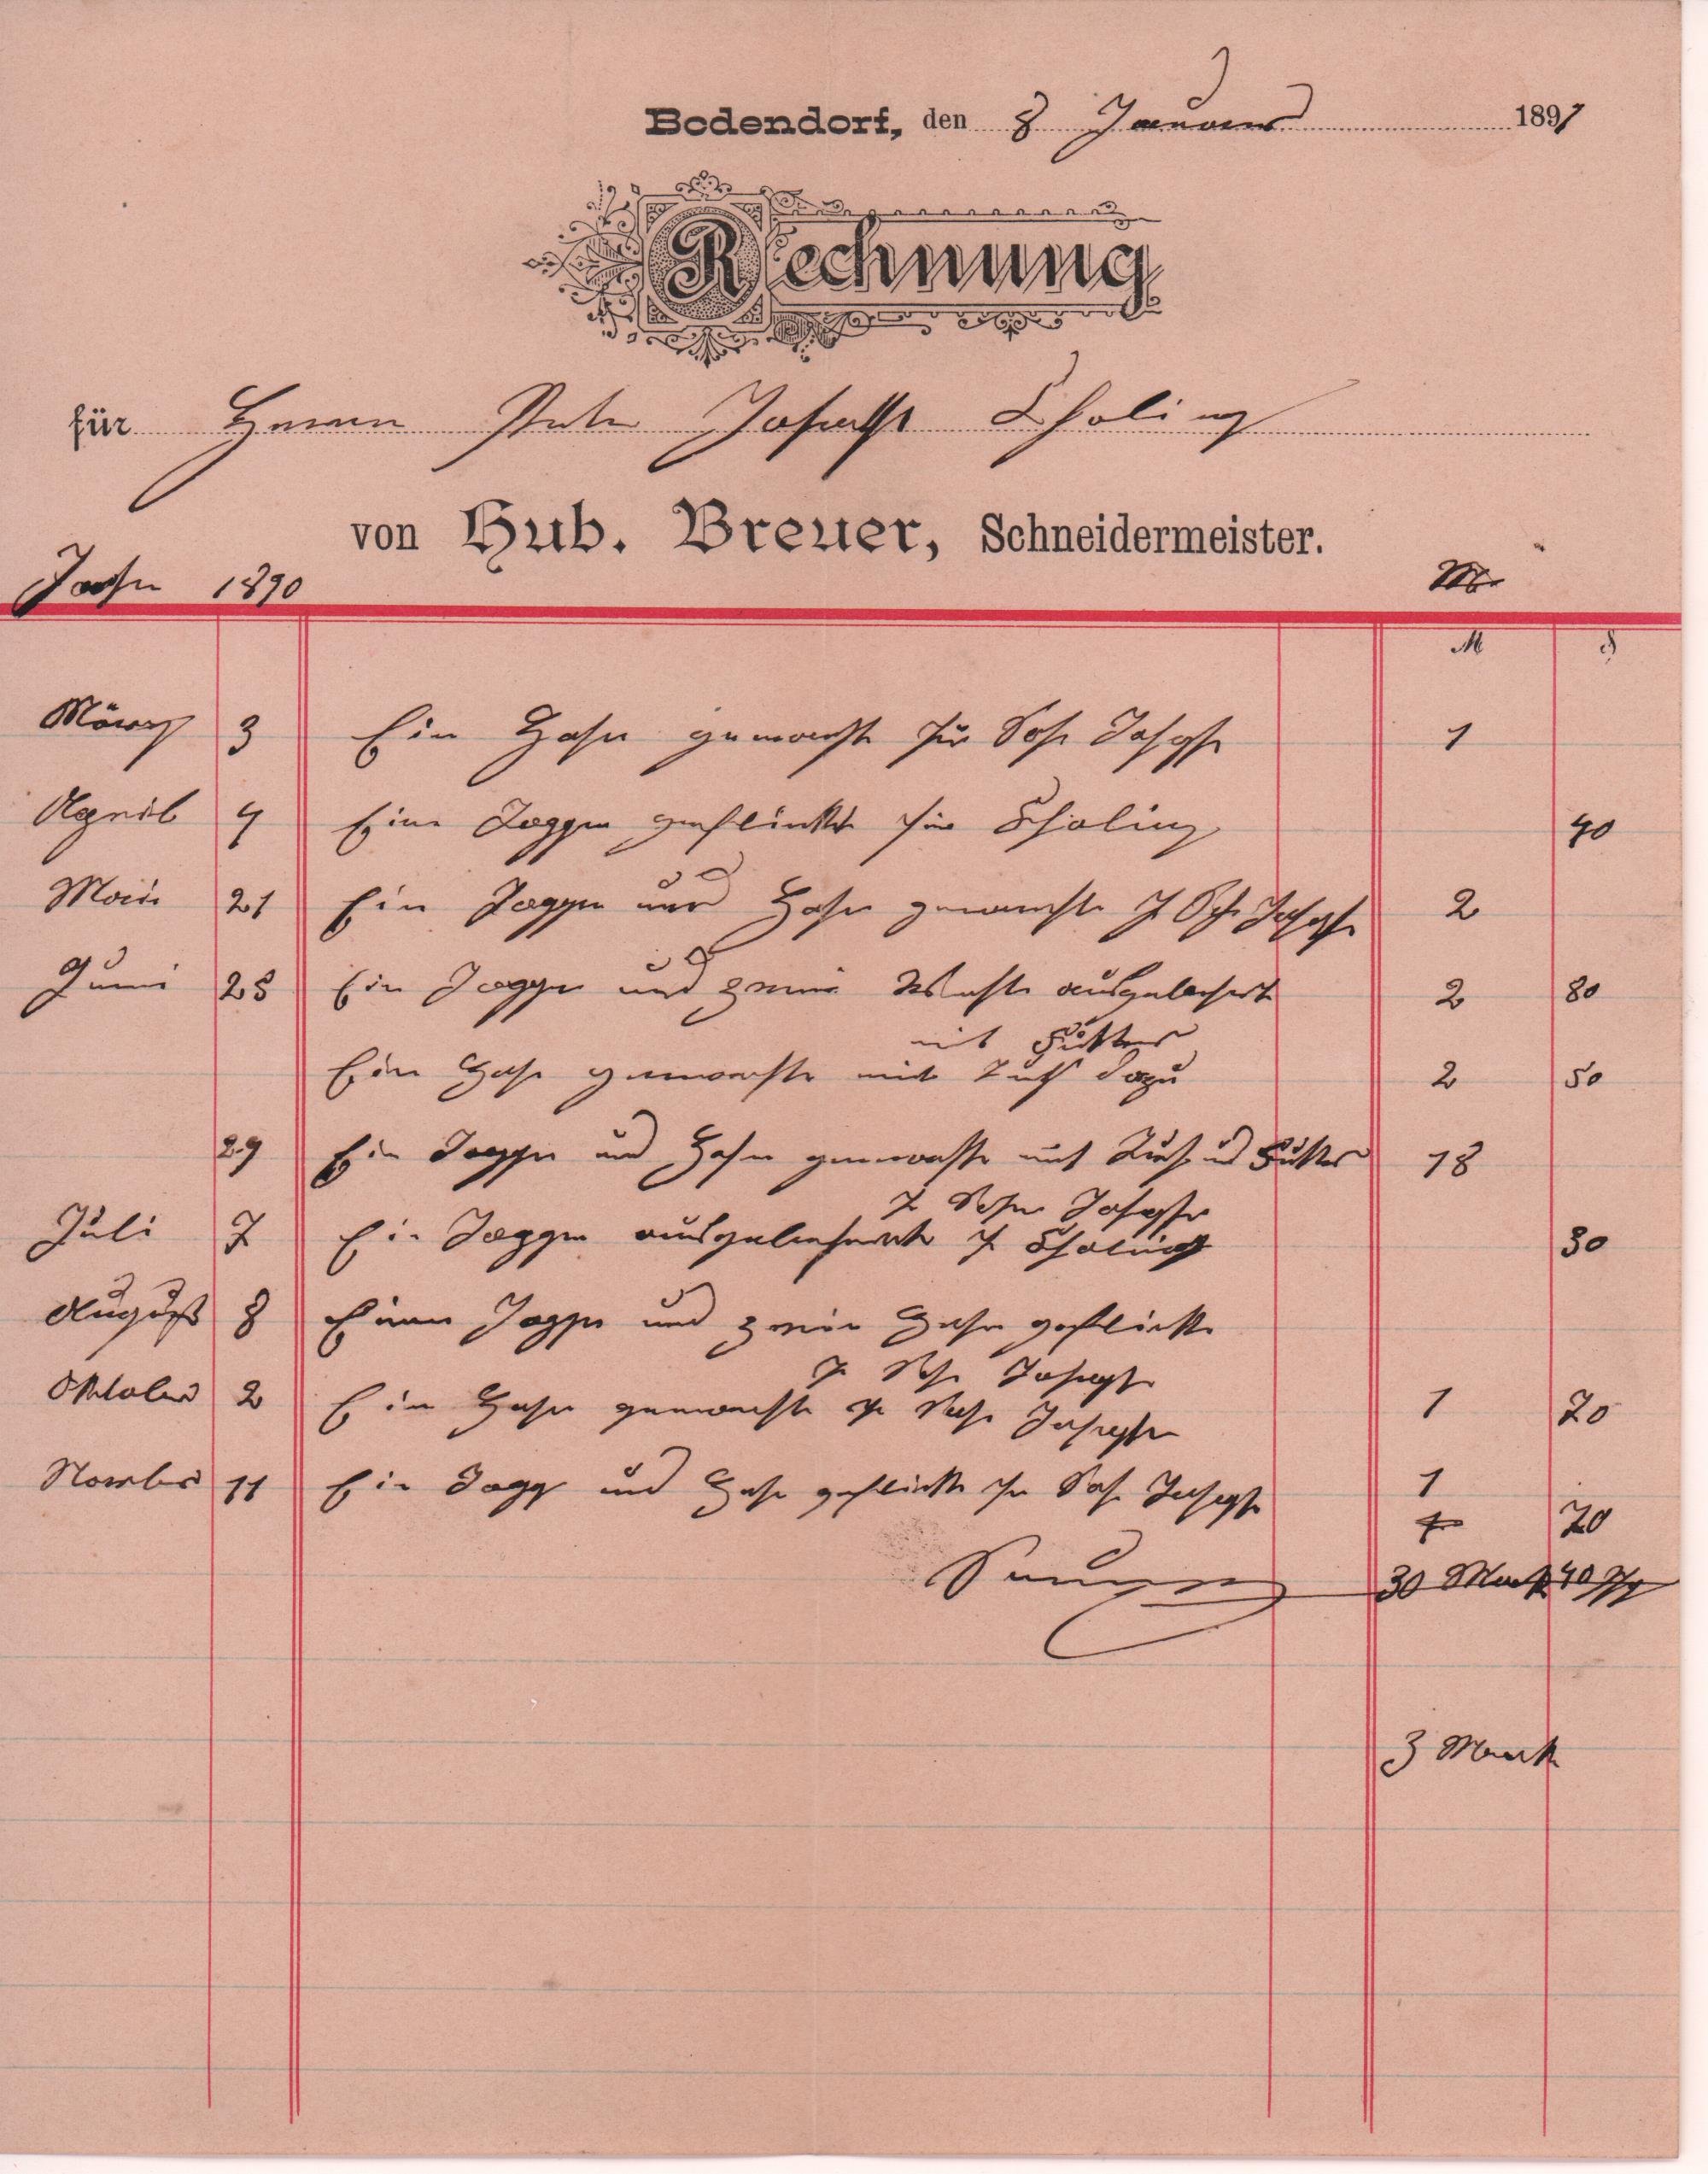 Rechnung für Schneiderarbeiten im Jahr 1890 vom 1. Januar 1891 an Peter Josef Cholin in Bodendorf/Ahr (Heimatarchiv Bad Bodendorf CC BY-NC-SA)